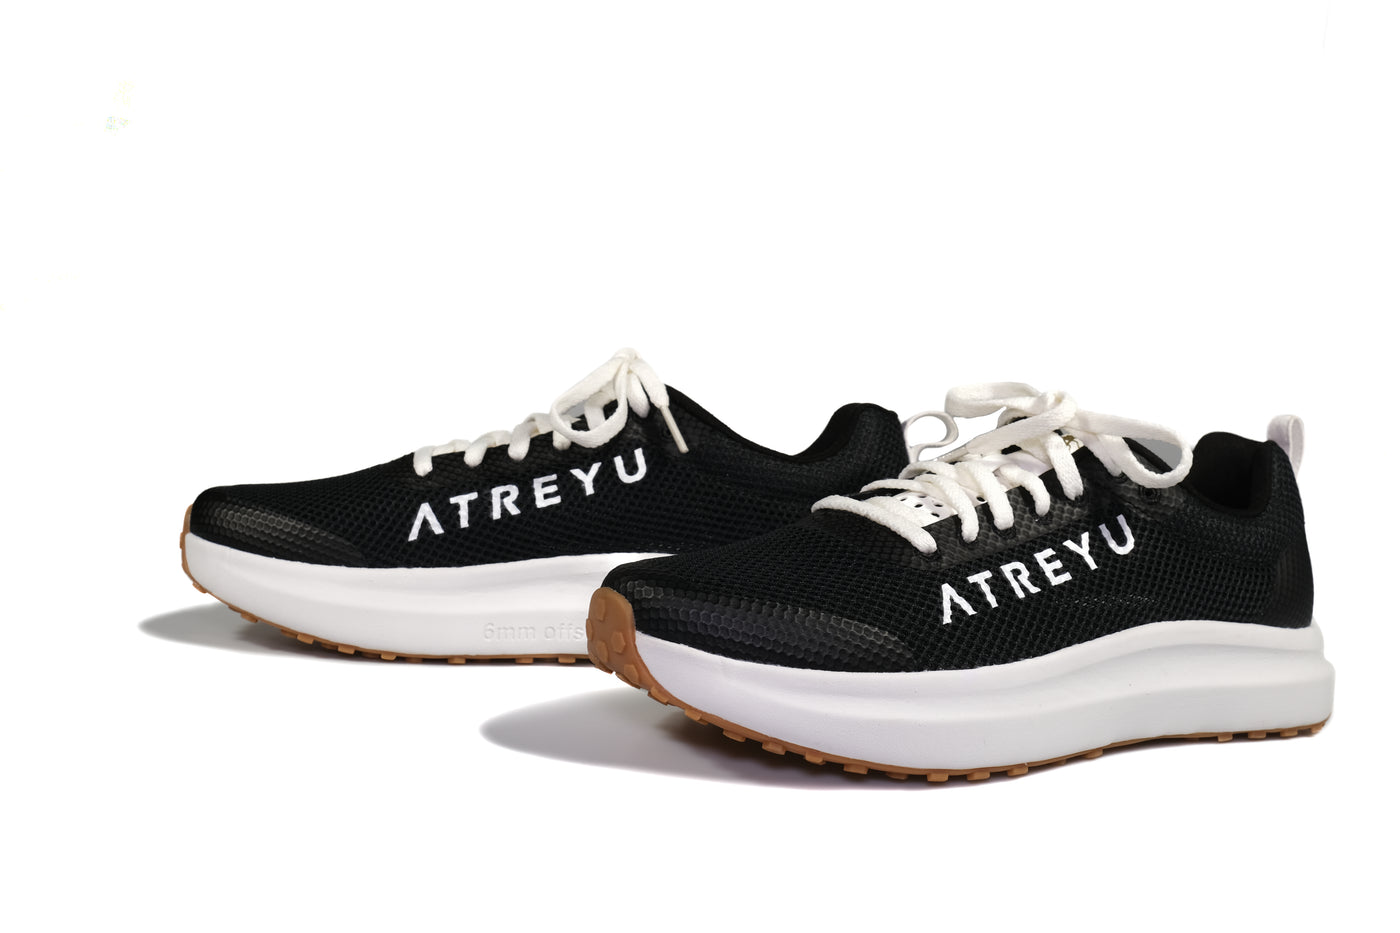 Daily Trainer - Atreyu Running Shoes Pair Black